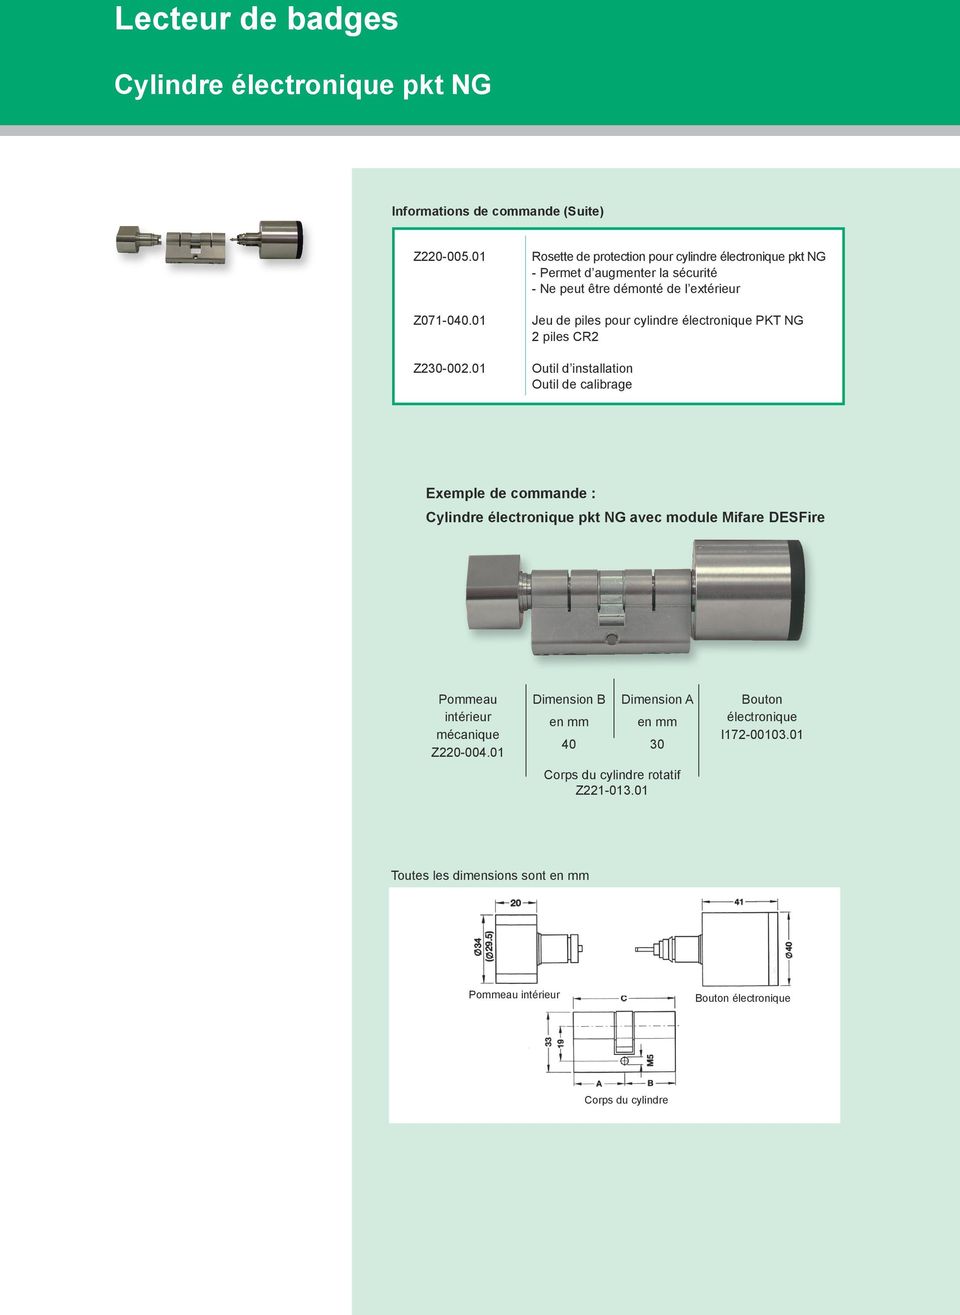 piles pour cylindre électronique PKT NG 2 piles CR2 Outil d installation Outil de calibrage Exemple de commande : avec module Mifare DESFire